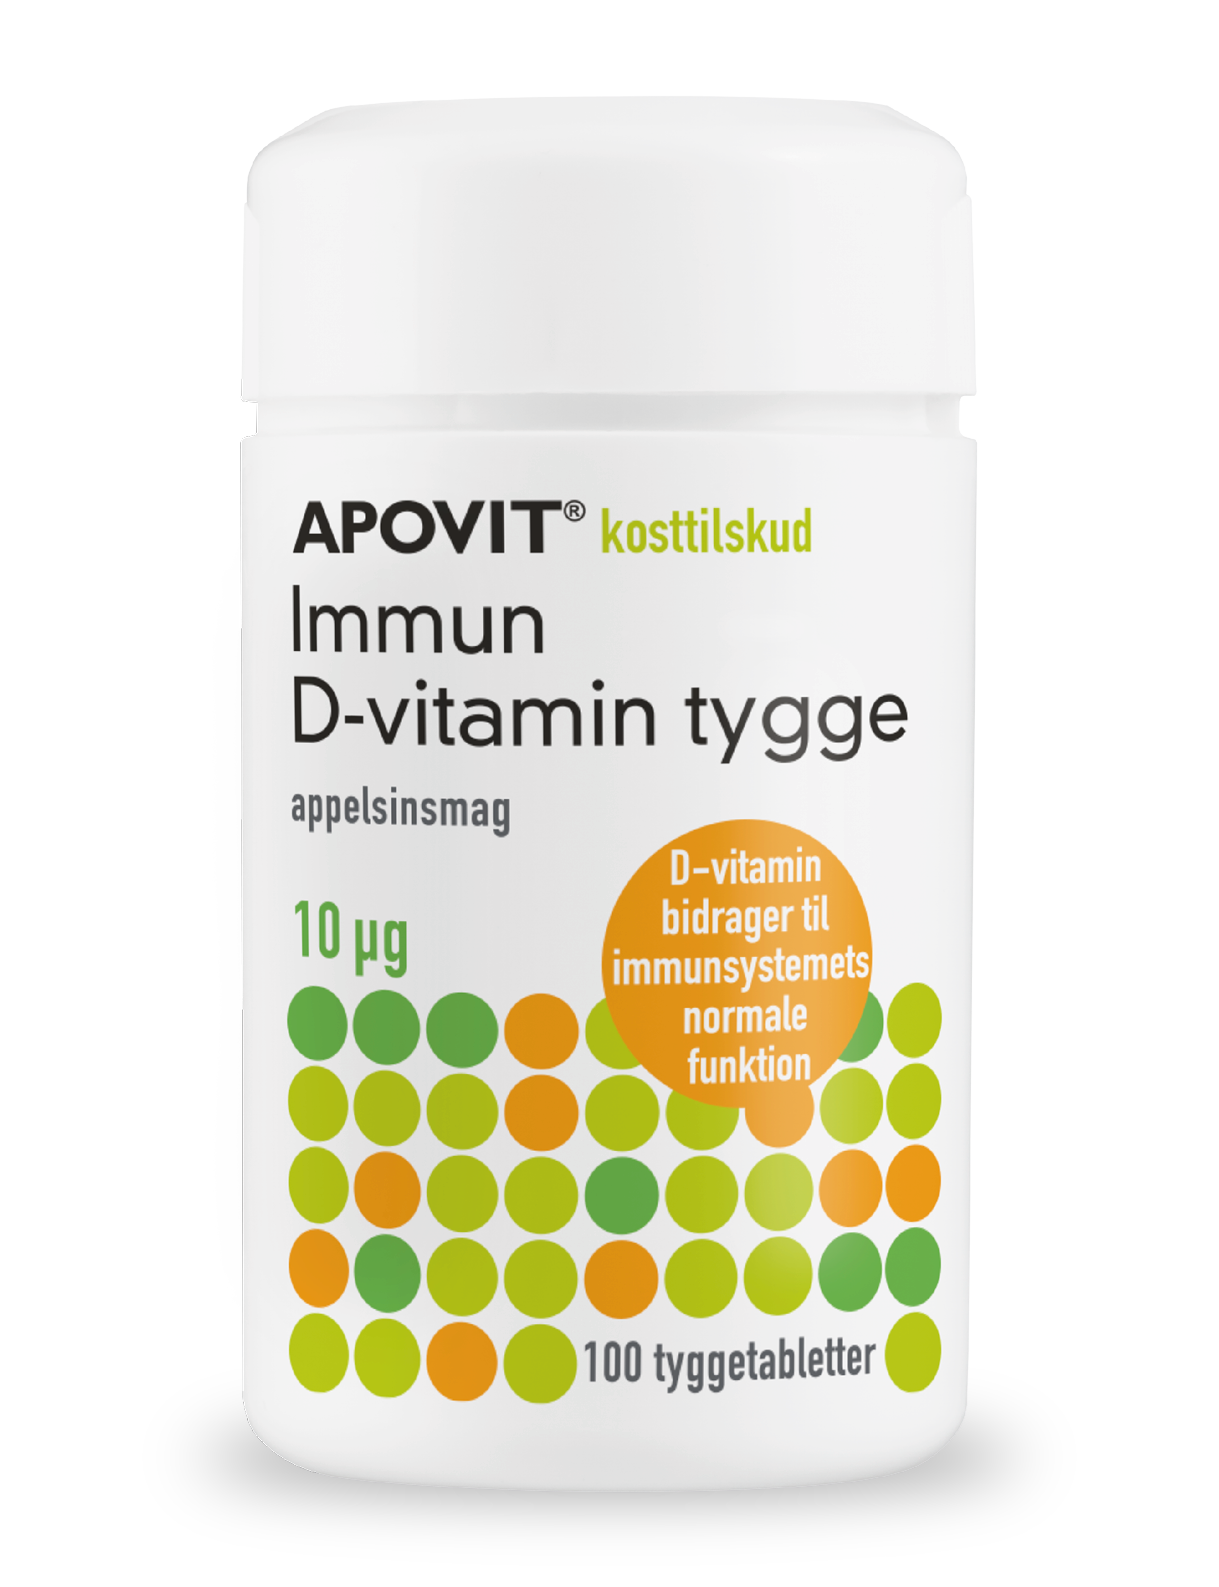 Immun D-vitamin tygge 10 µg, appelsinsmag